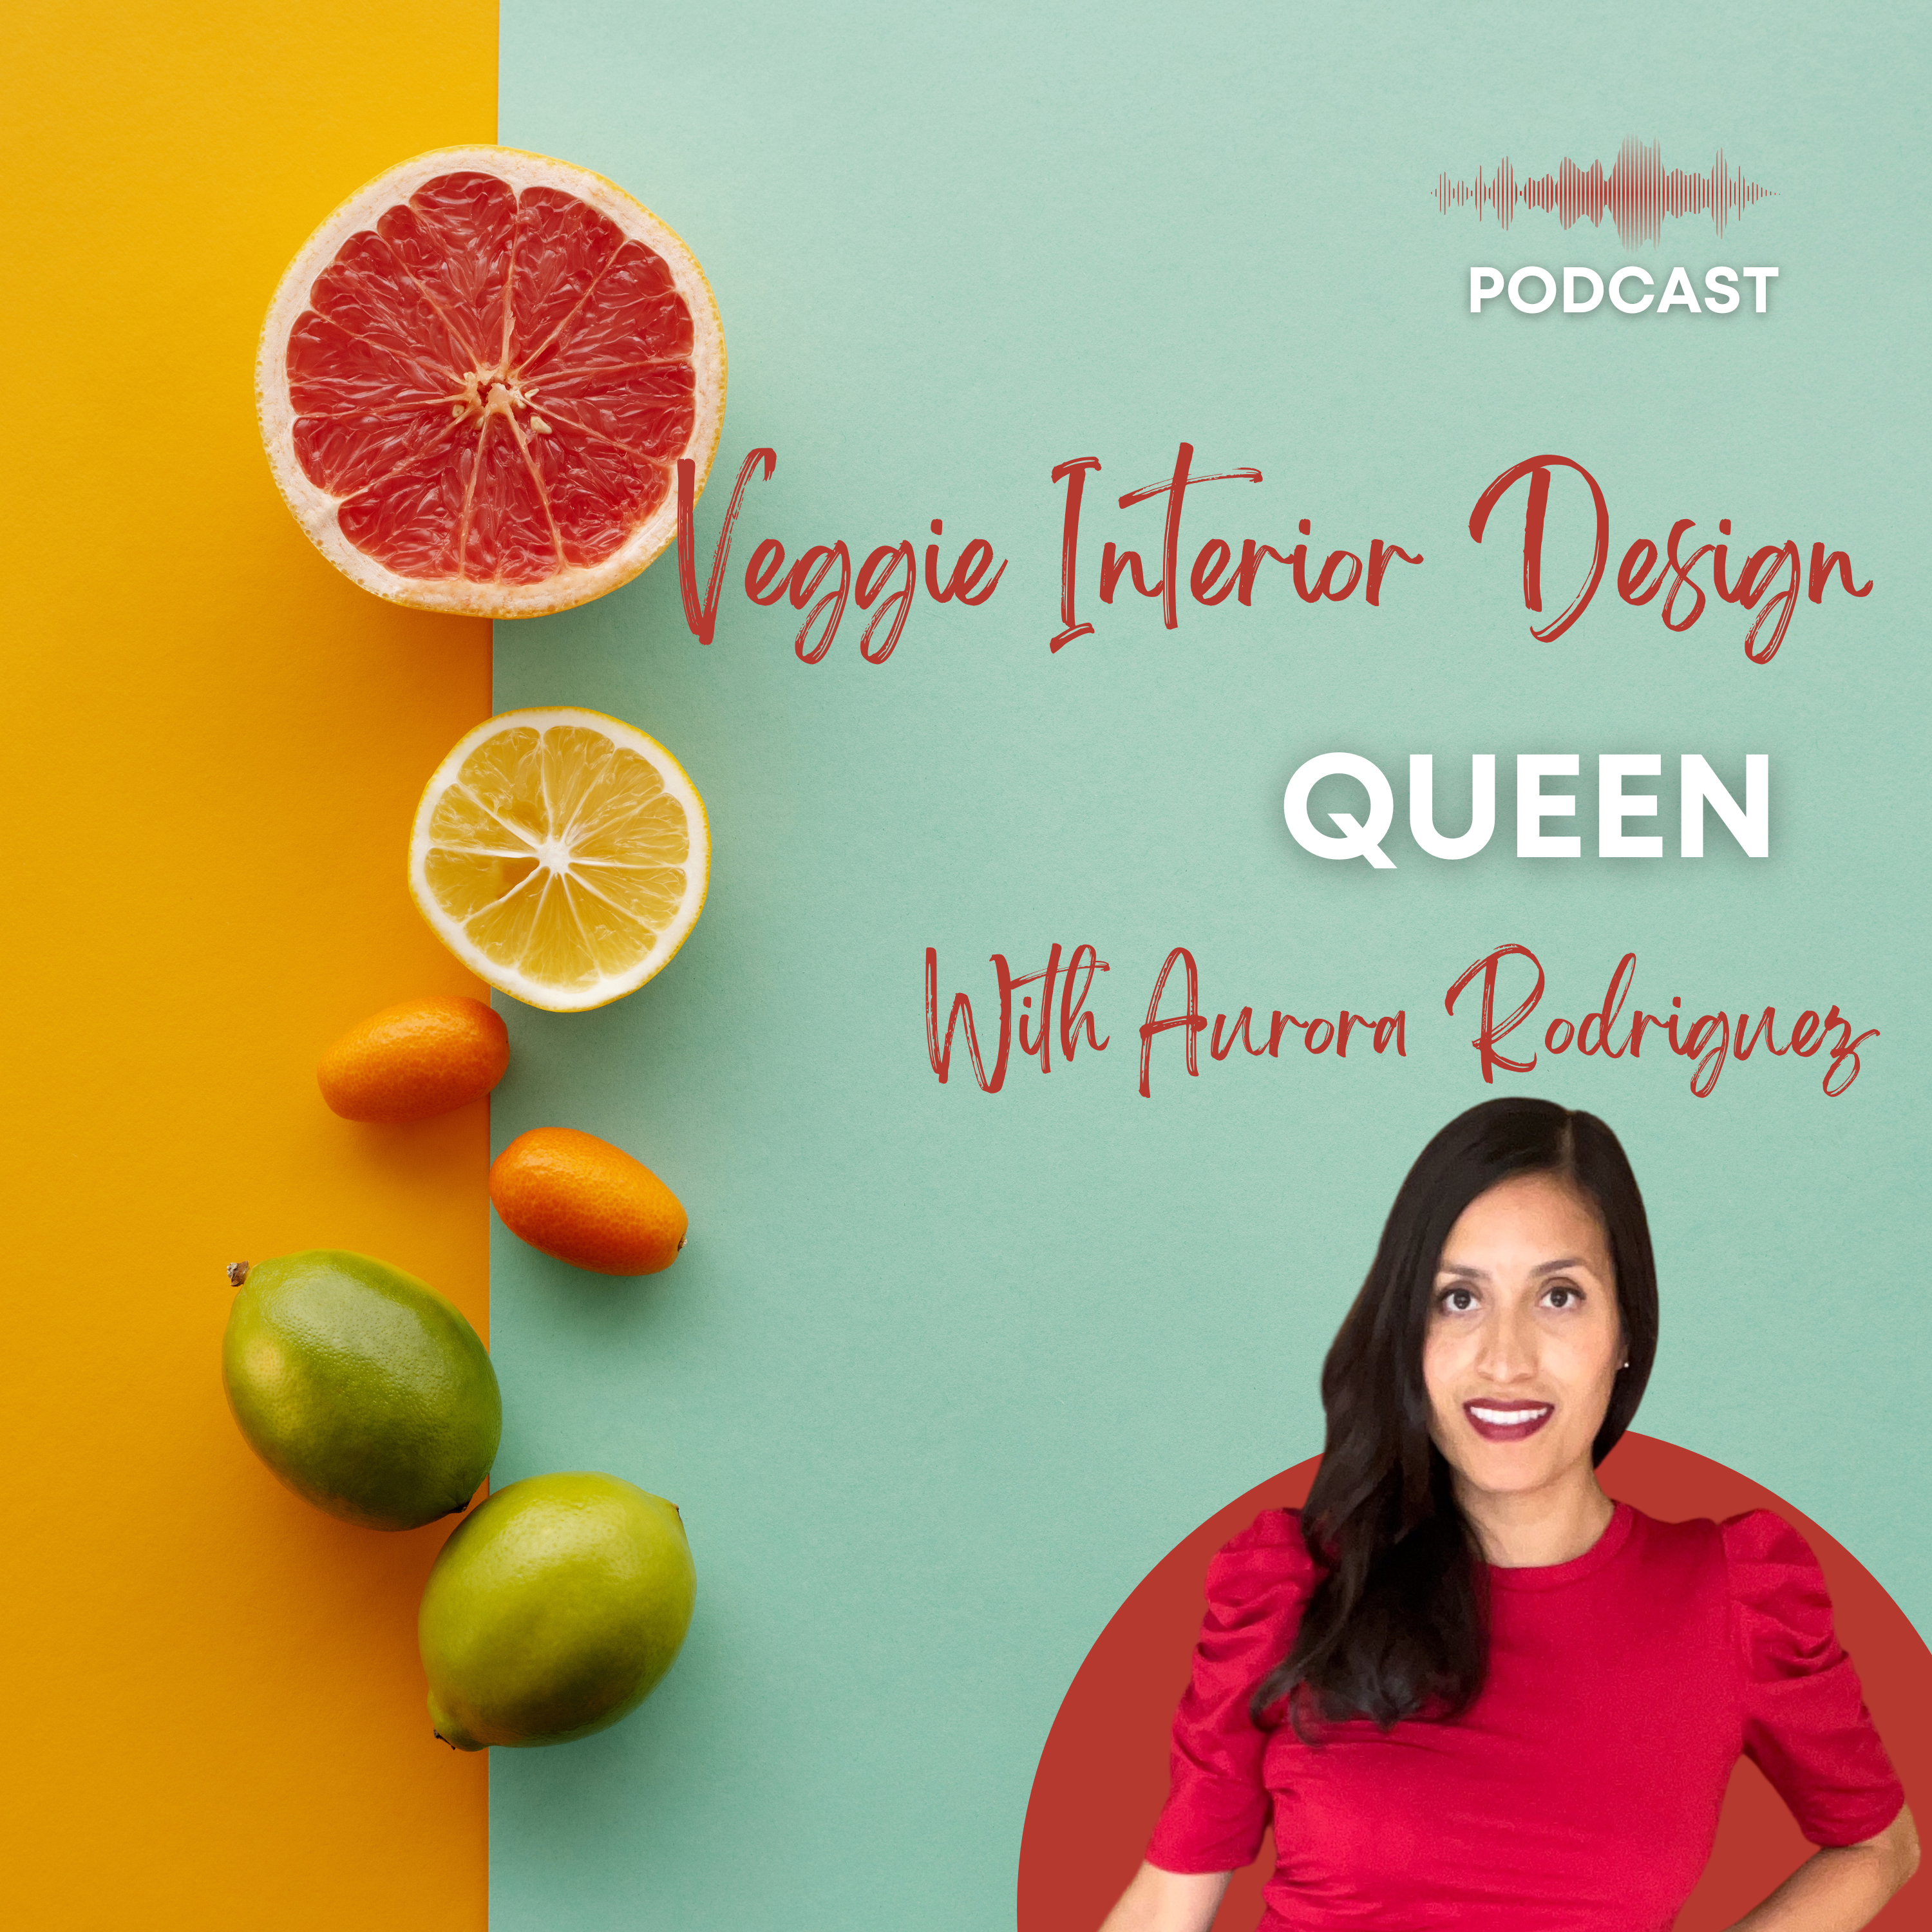 Veggie Interior Design Queen Podcast